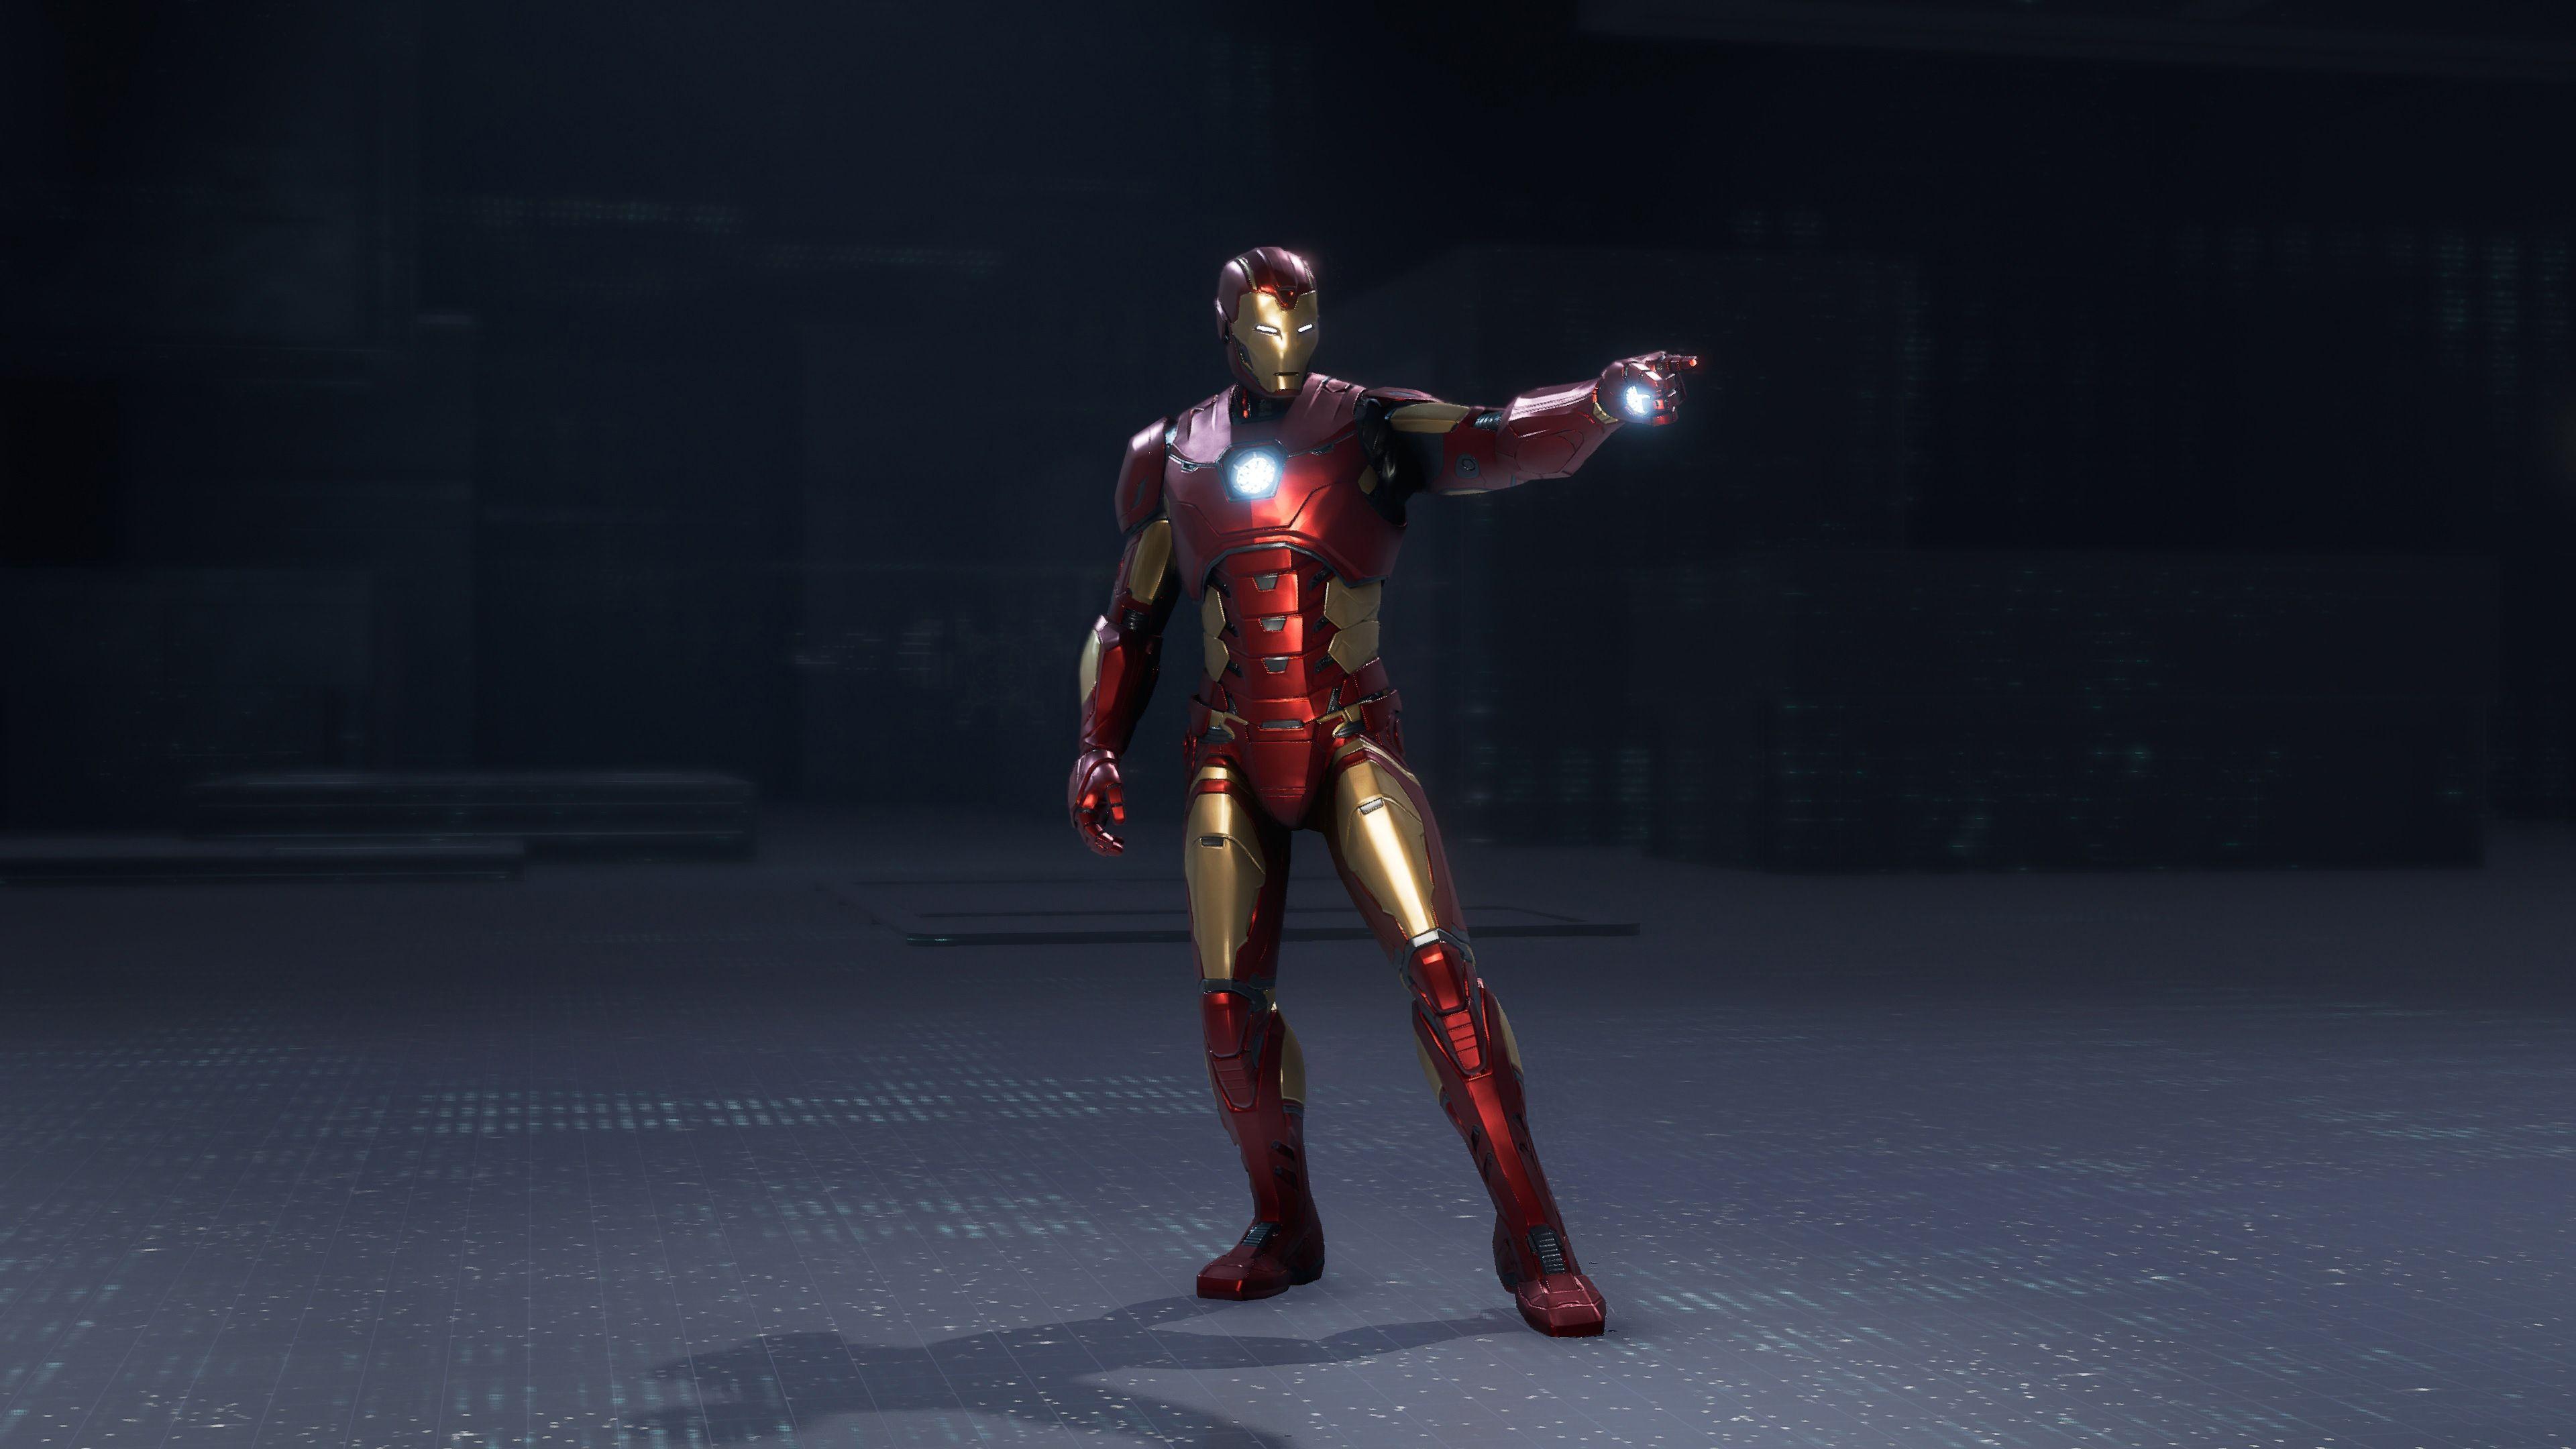 3840x2160 Iron Man Marvels Avengers 4k 2020 iPad Pro Retina Display HD Hình nền 4k, Hình ảnh, Bối cảnh, Hình ảnh và Hình ảnh